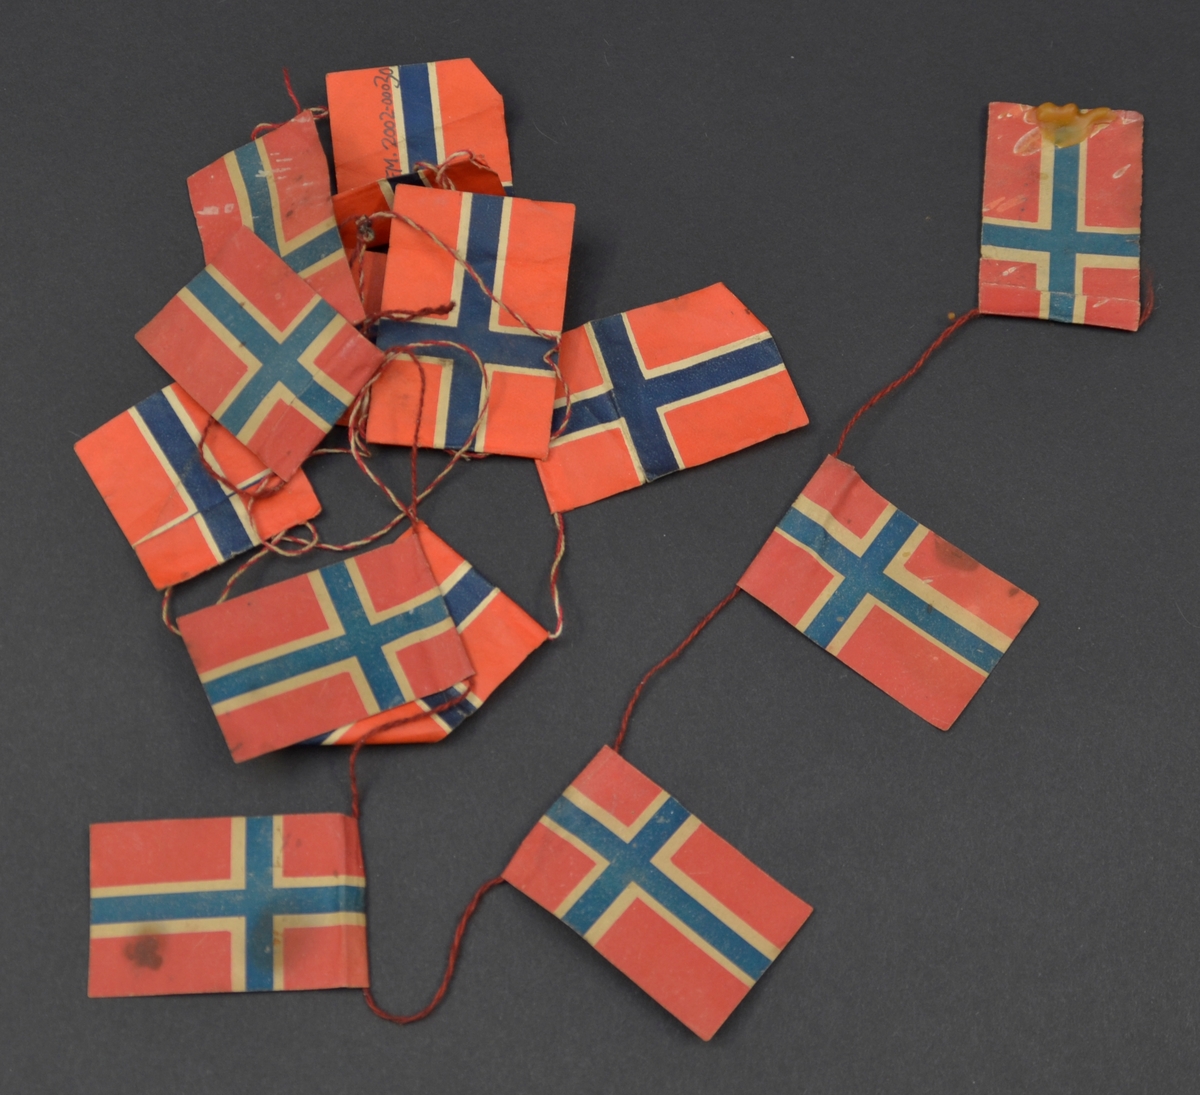 Lekkje med norske flagg, sett saman av to ulike typar. Den eine typen har klårare fargar enn den andre og snor som er tvunne av raud og kvit tråd. På den andre typen er snora tvunne av to raude trådar.